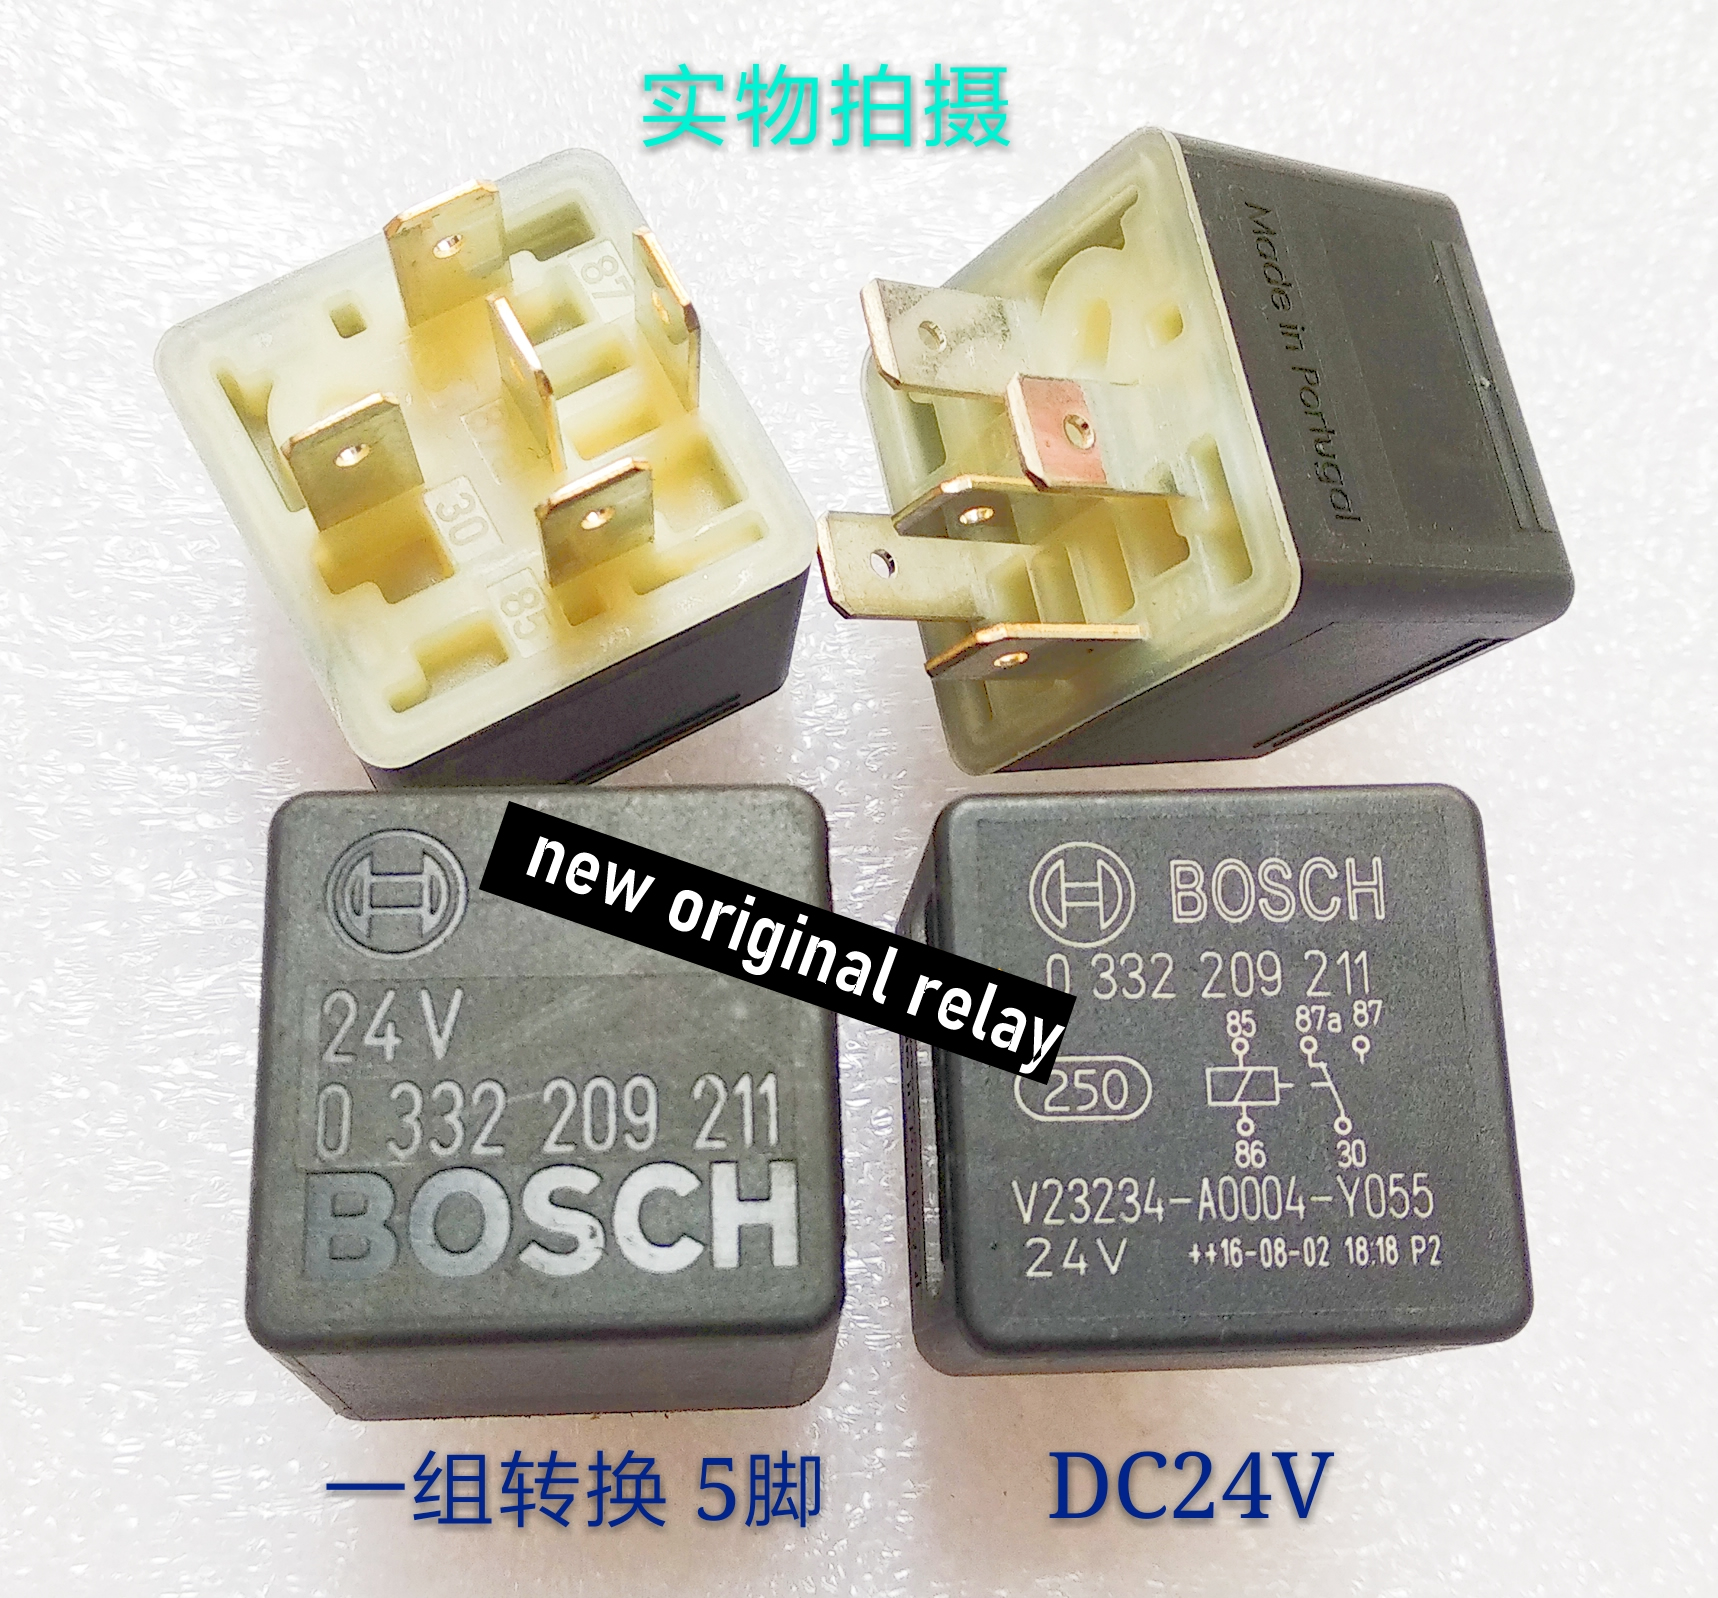 BOSCH V23234-A004-Y055 0332209211 DC24V relay new